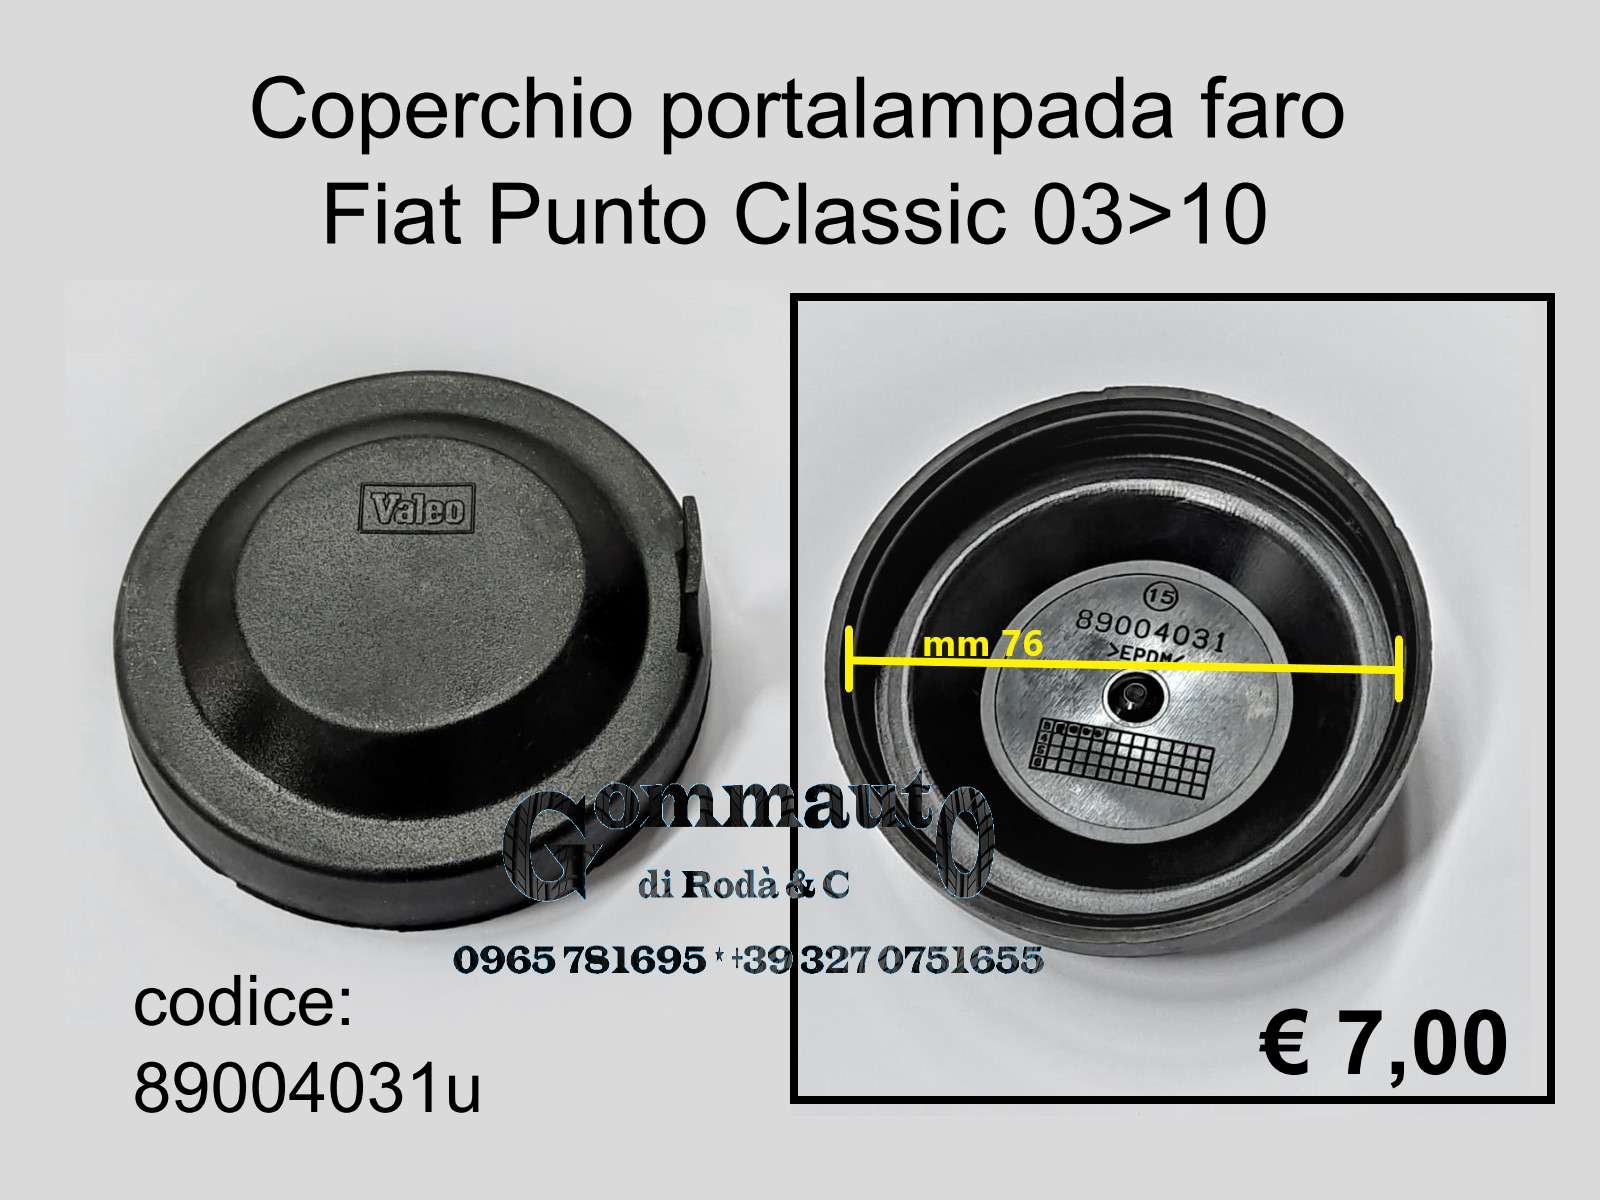 Coperchio portalampada faro Fiat Punto Classic